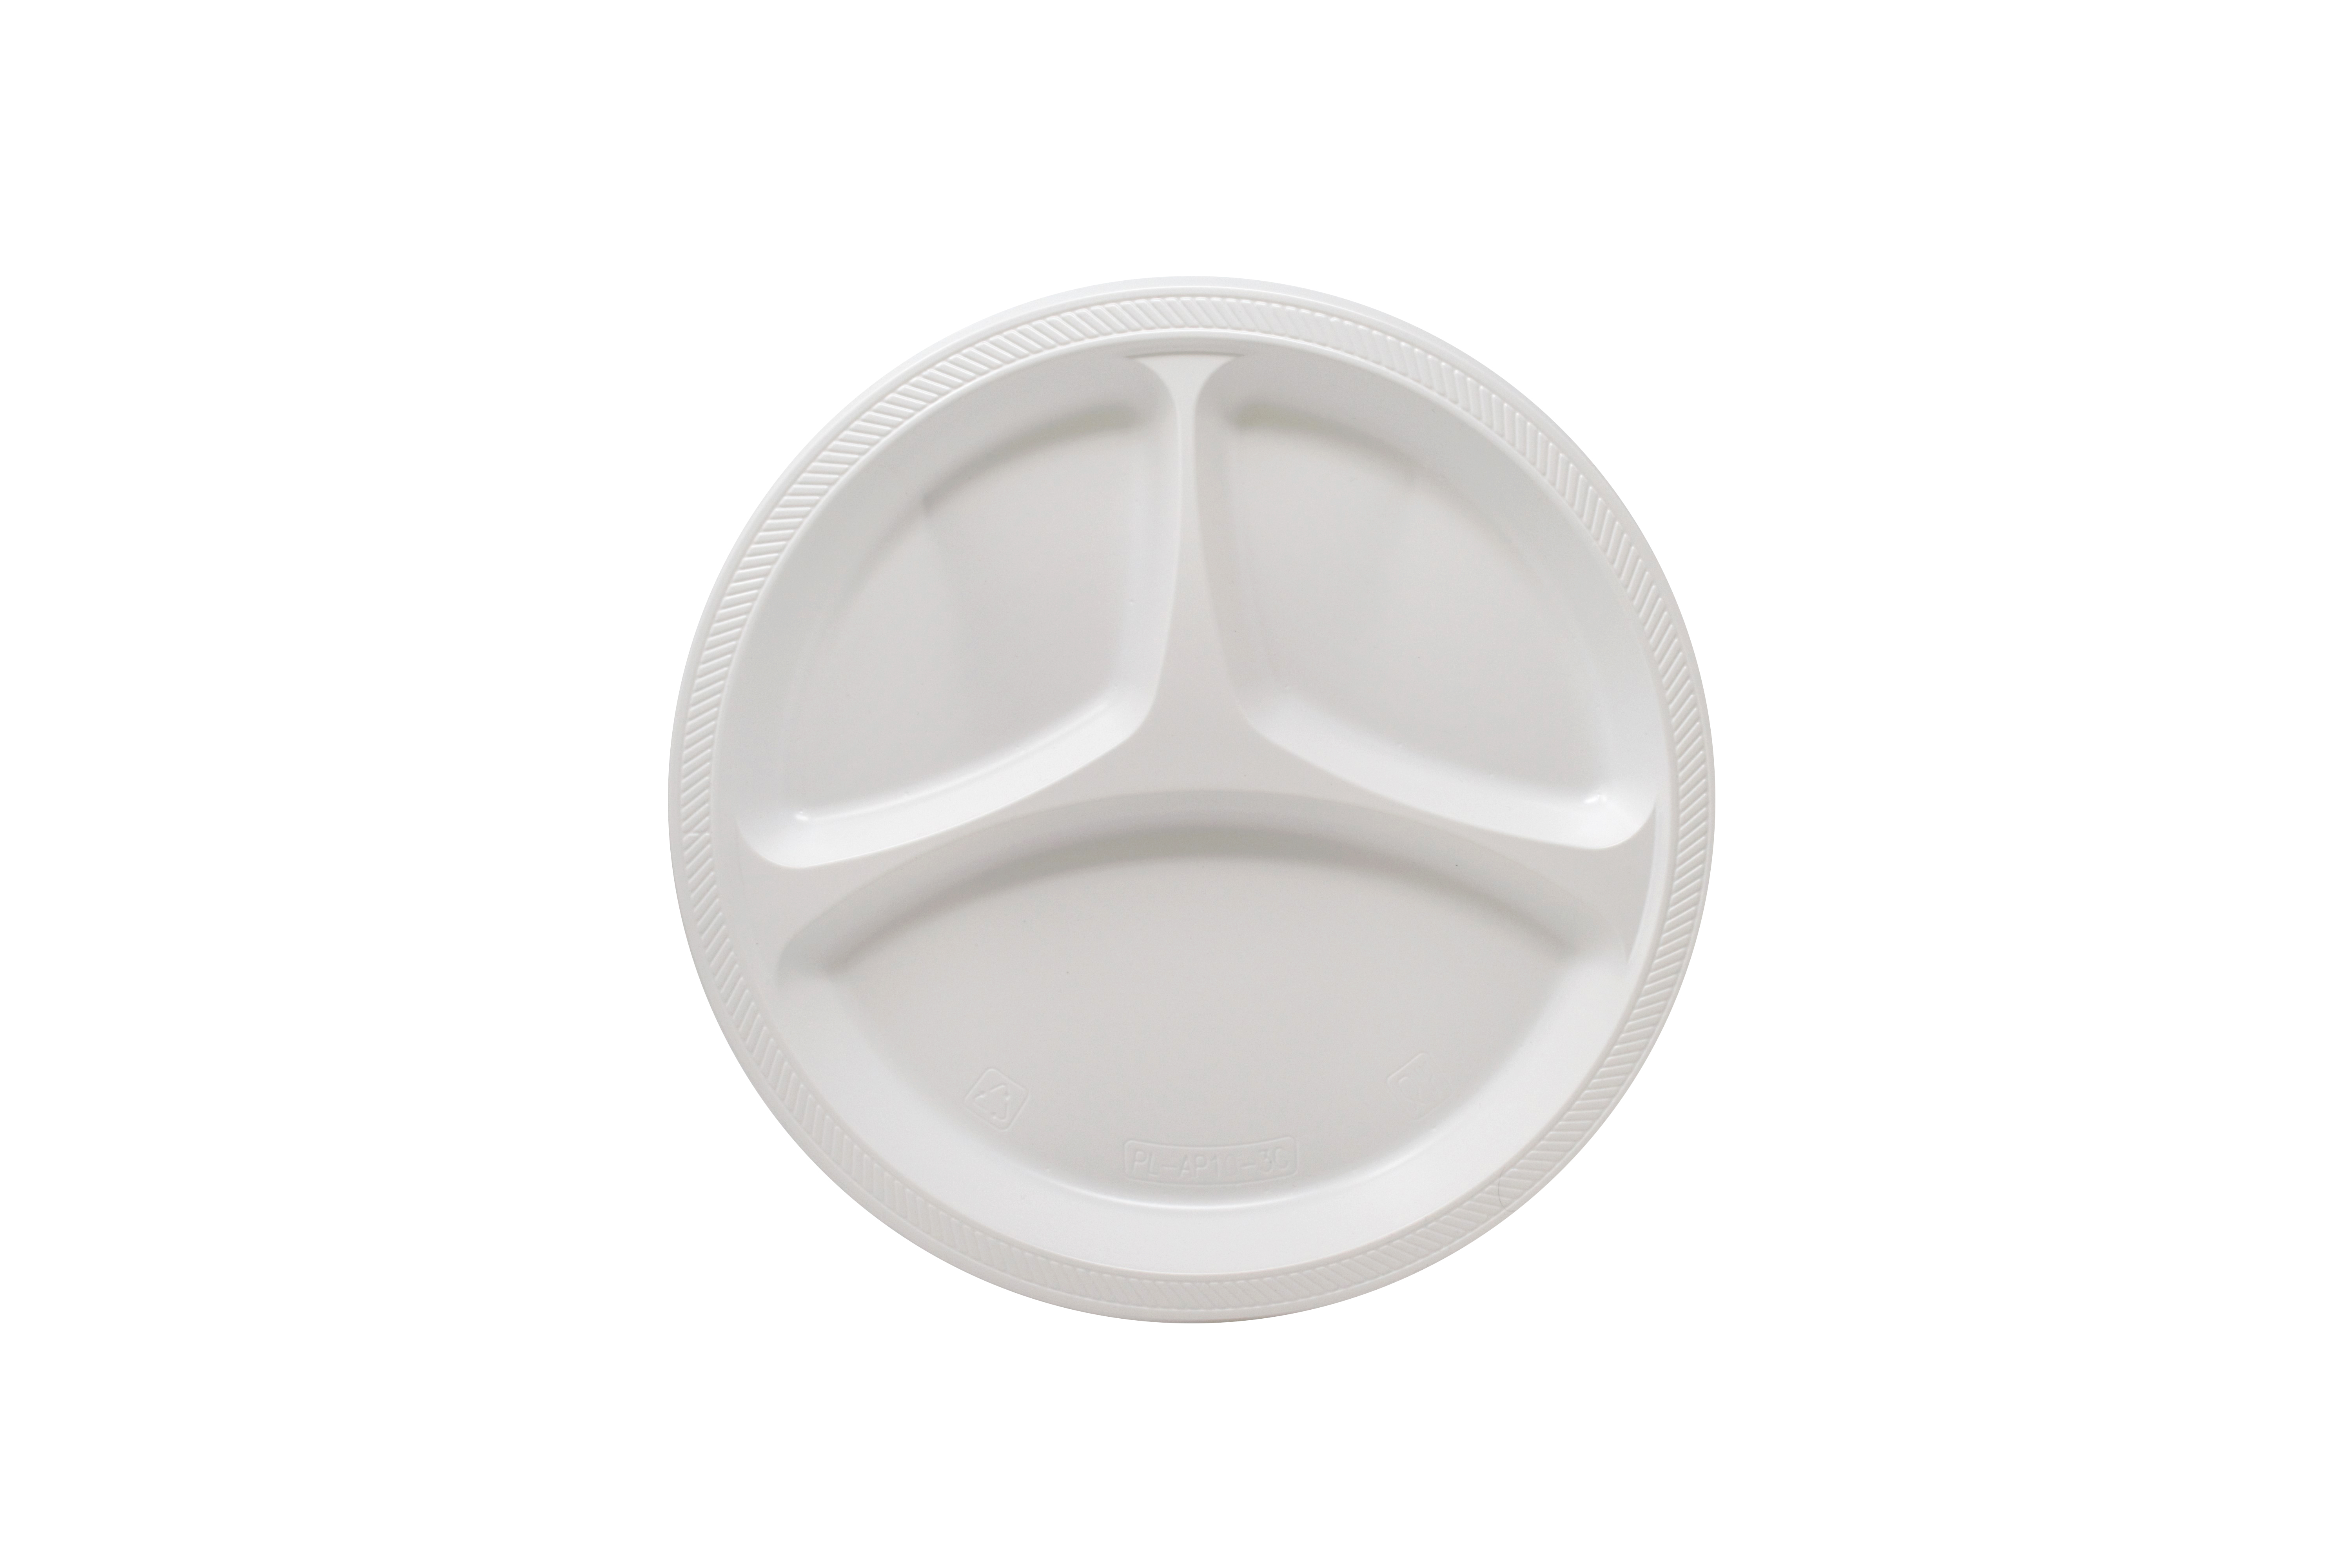 10 Compartment White Disposable Plastic Plates - 200pcs